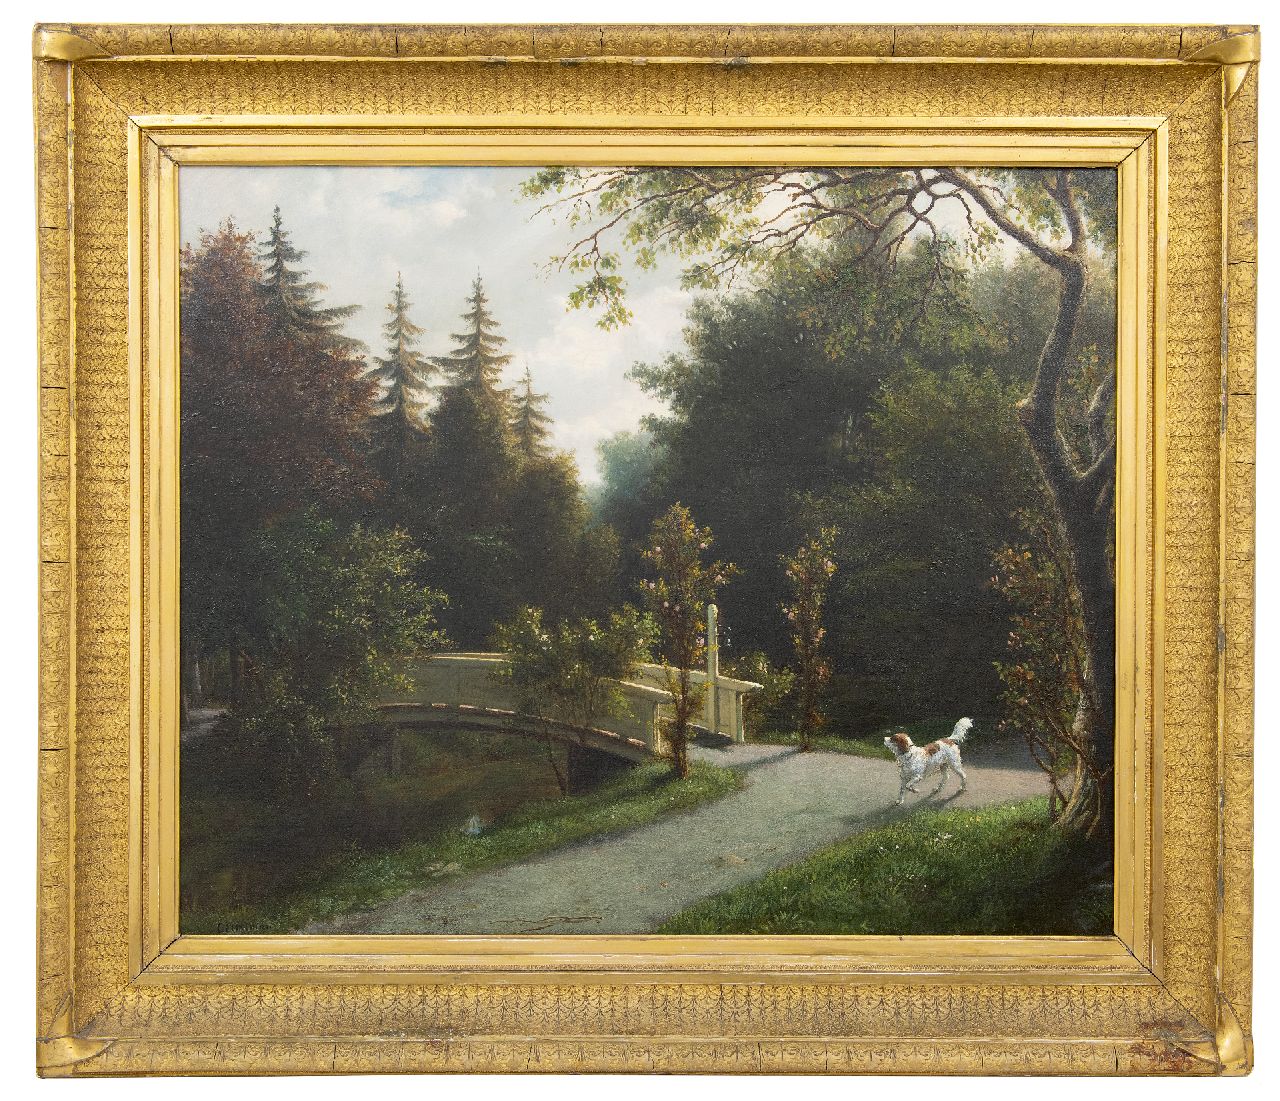 Eerelman O.  | Otto Eerelman | Schilderijen te koop aangeboden | Jachthond in een park, olieverf op doek 65,5 x 81,0 cm, gesigneerd linksonder